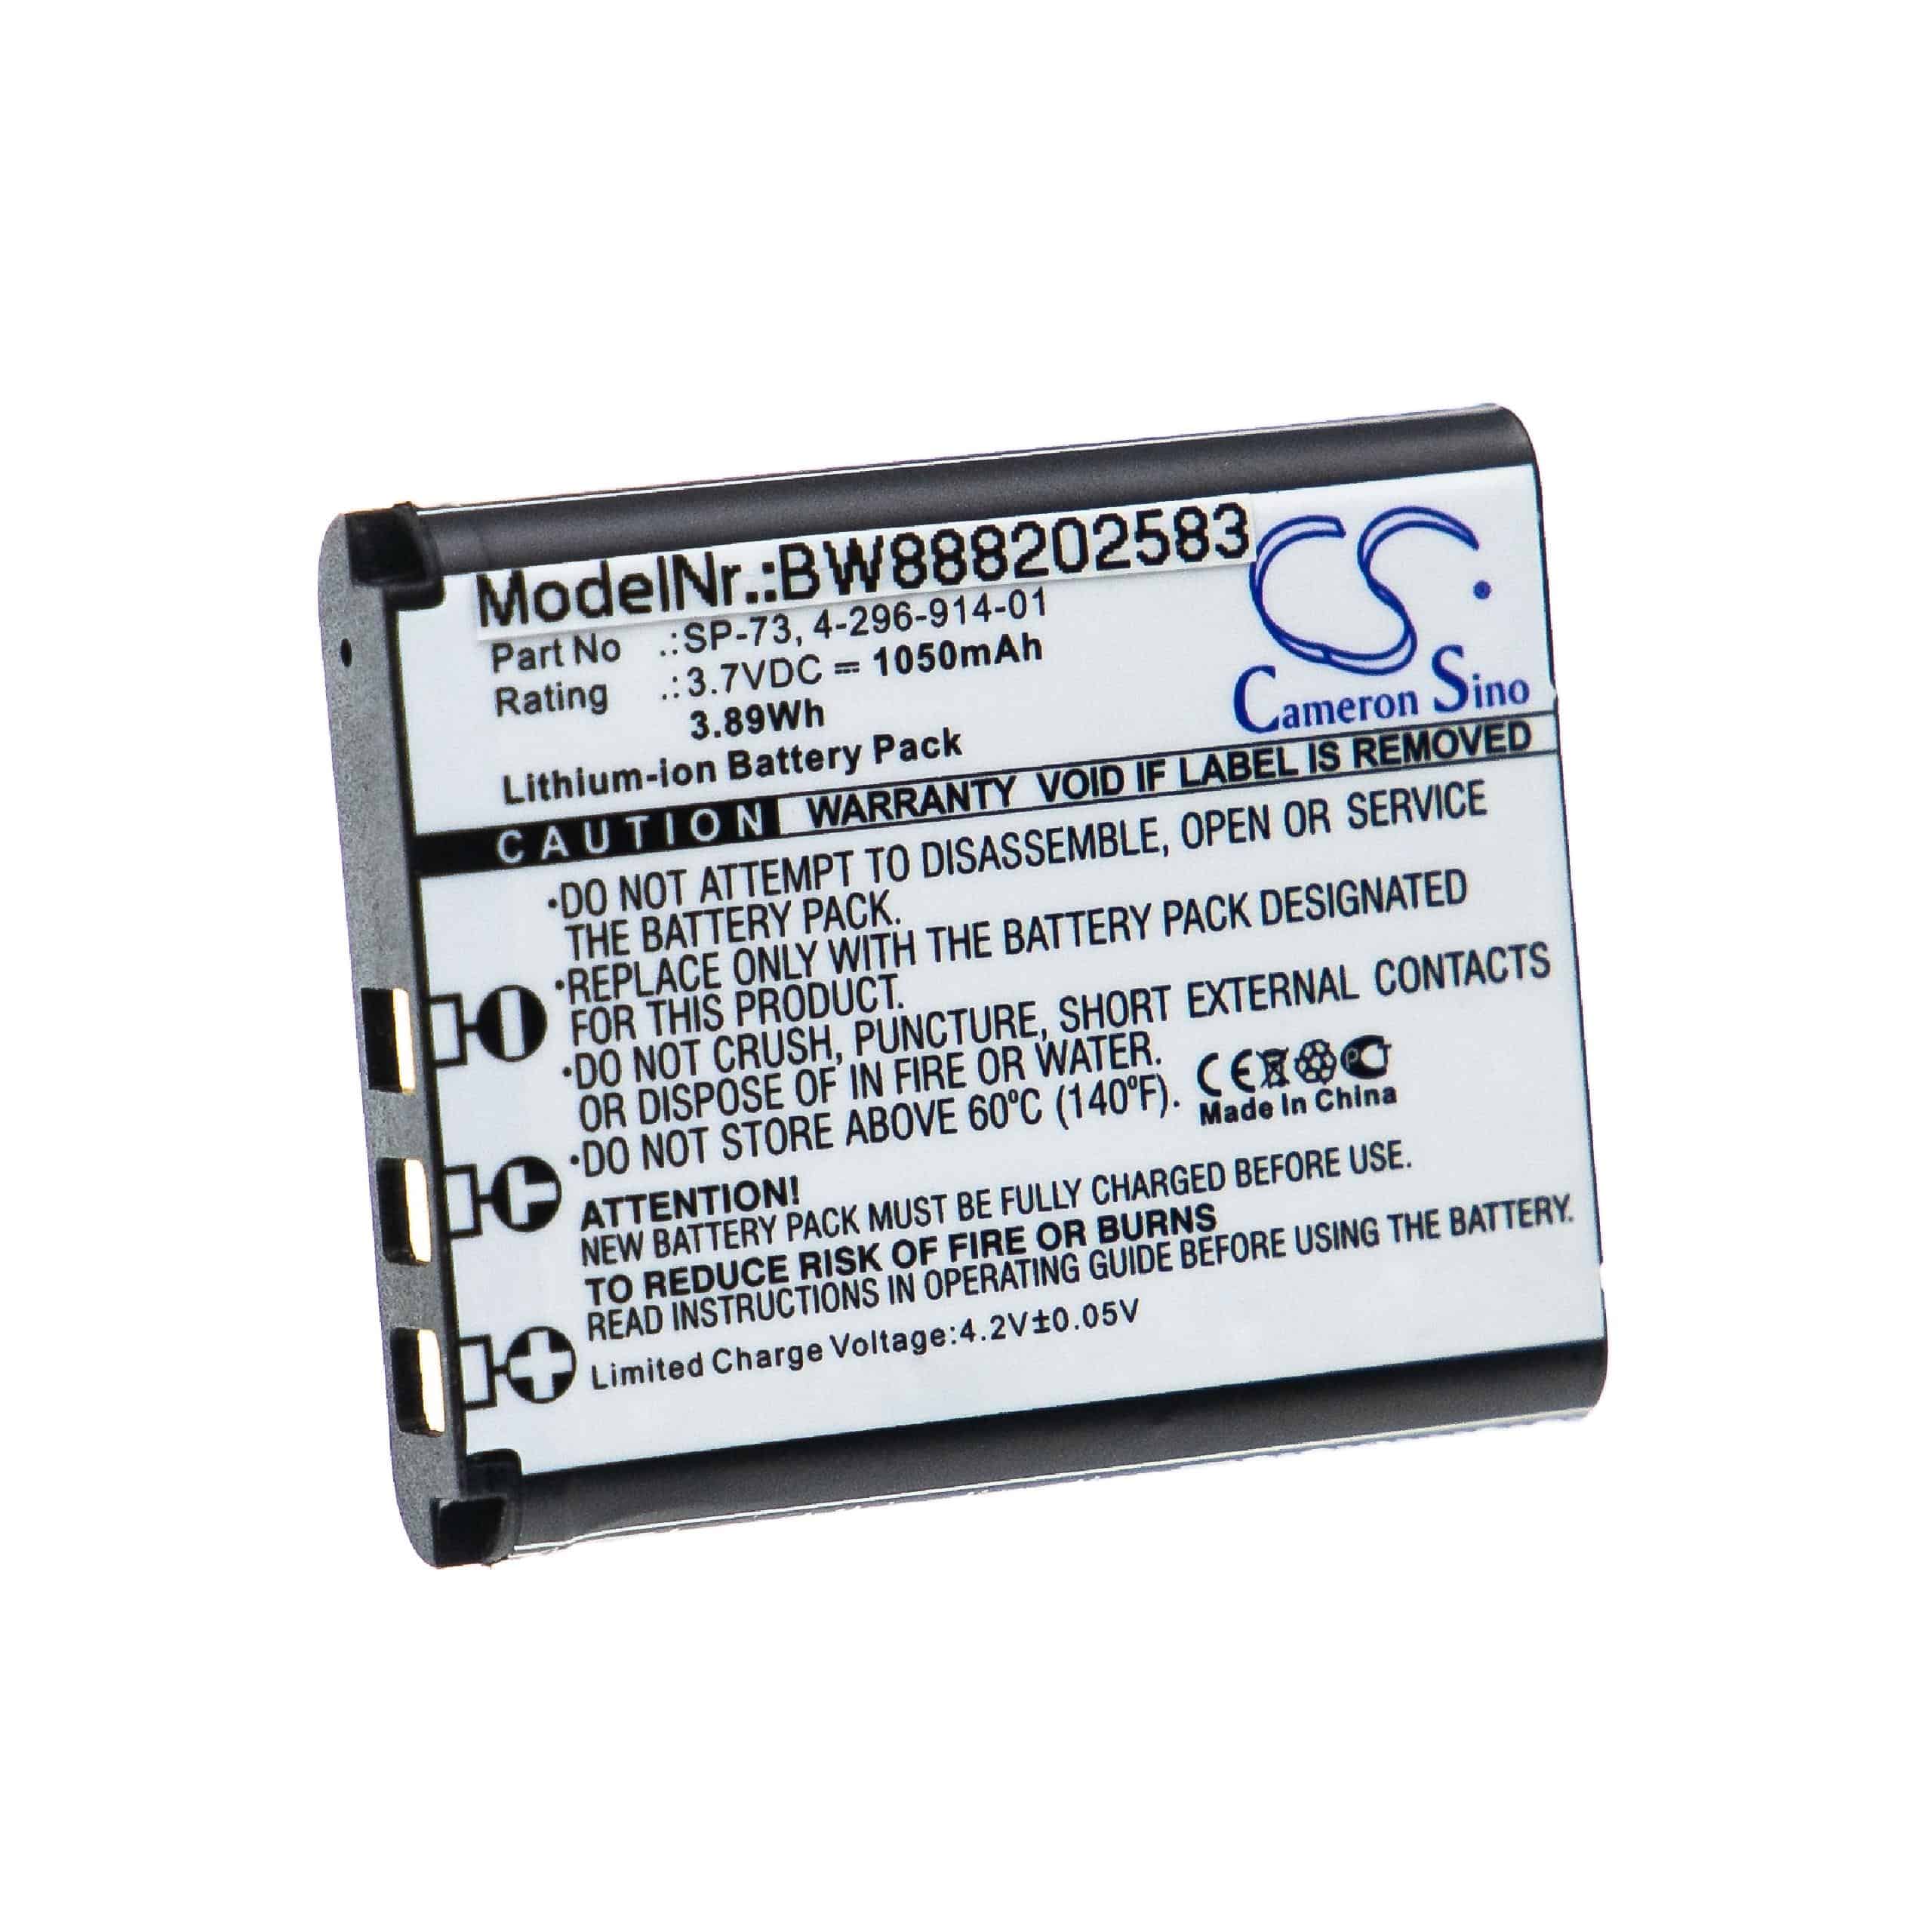 Batterie remplace Sony SP-73, SP73, 4-296-914-01 pour casque audio - 1050mAh 3,7V Li-ion